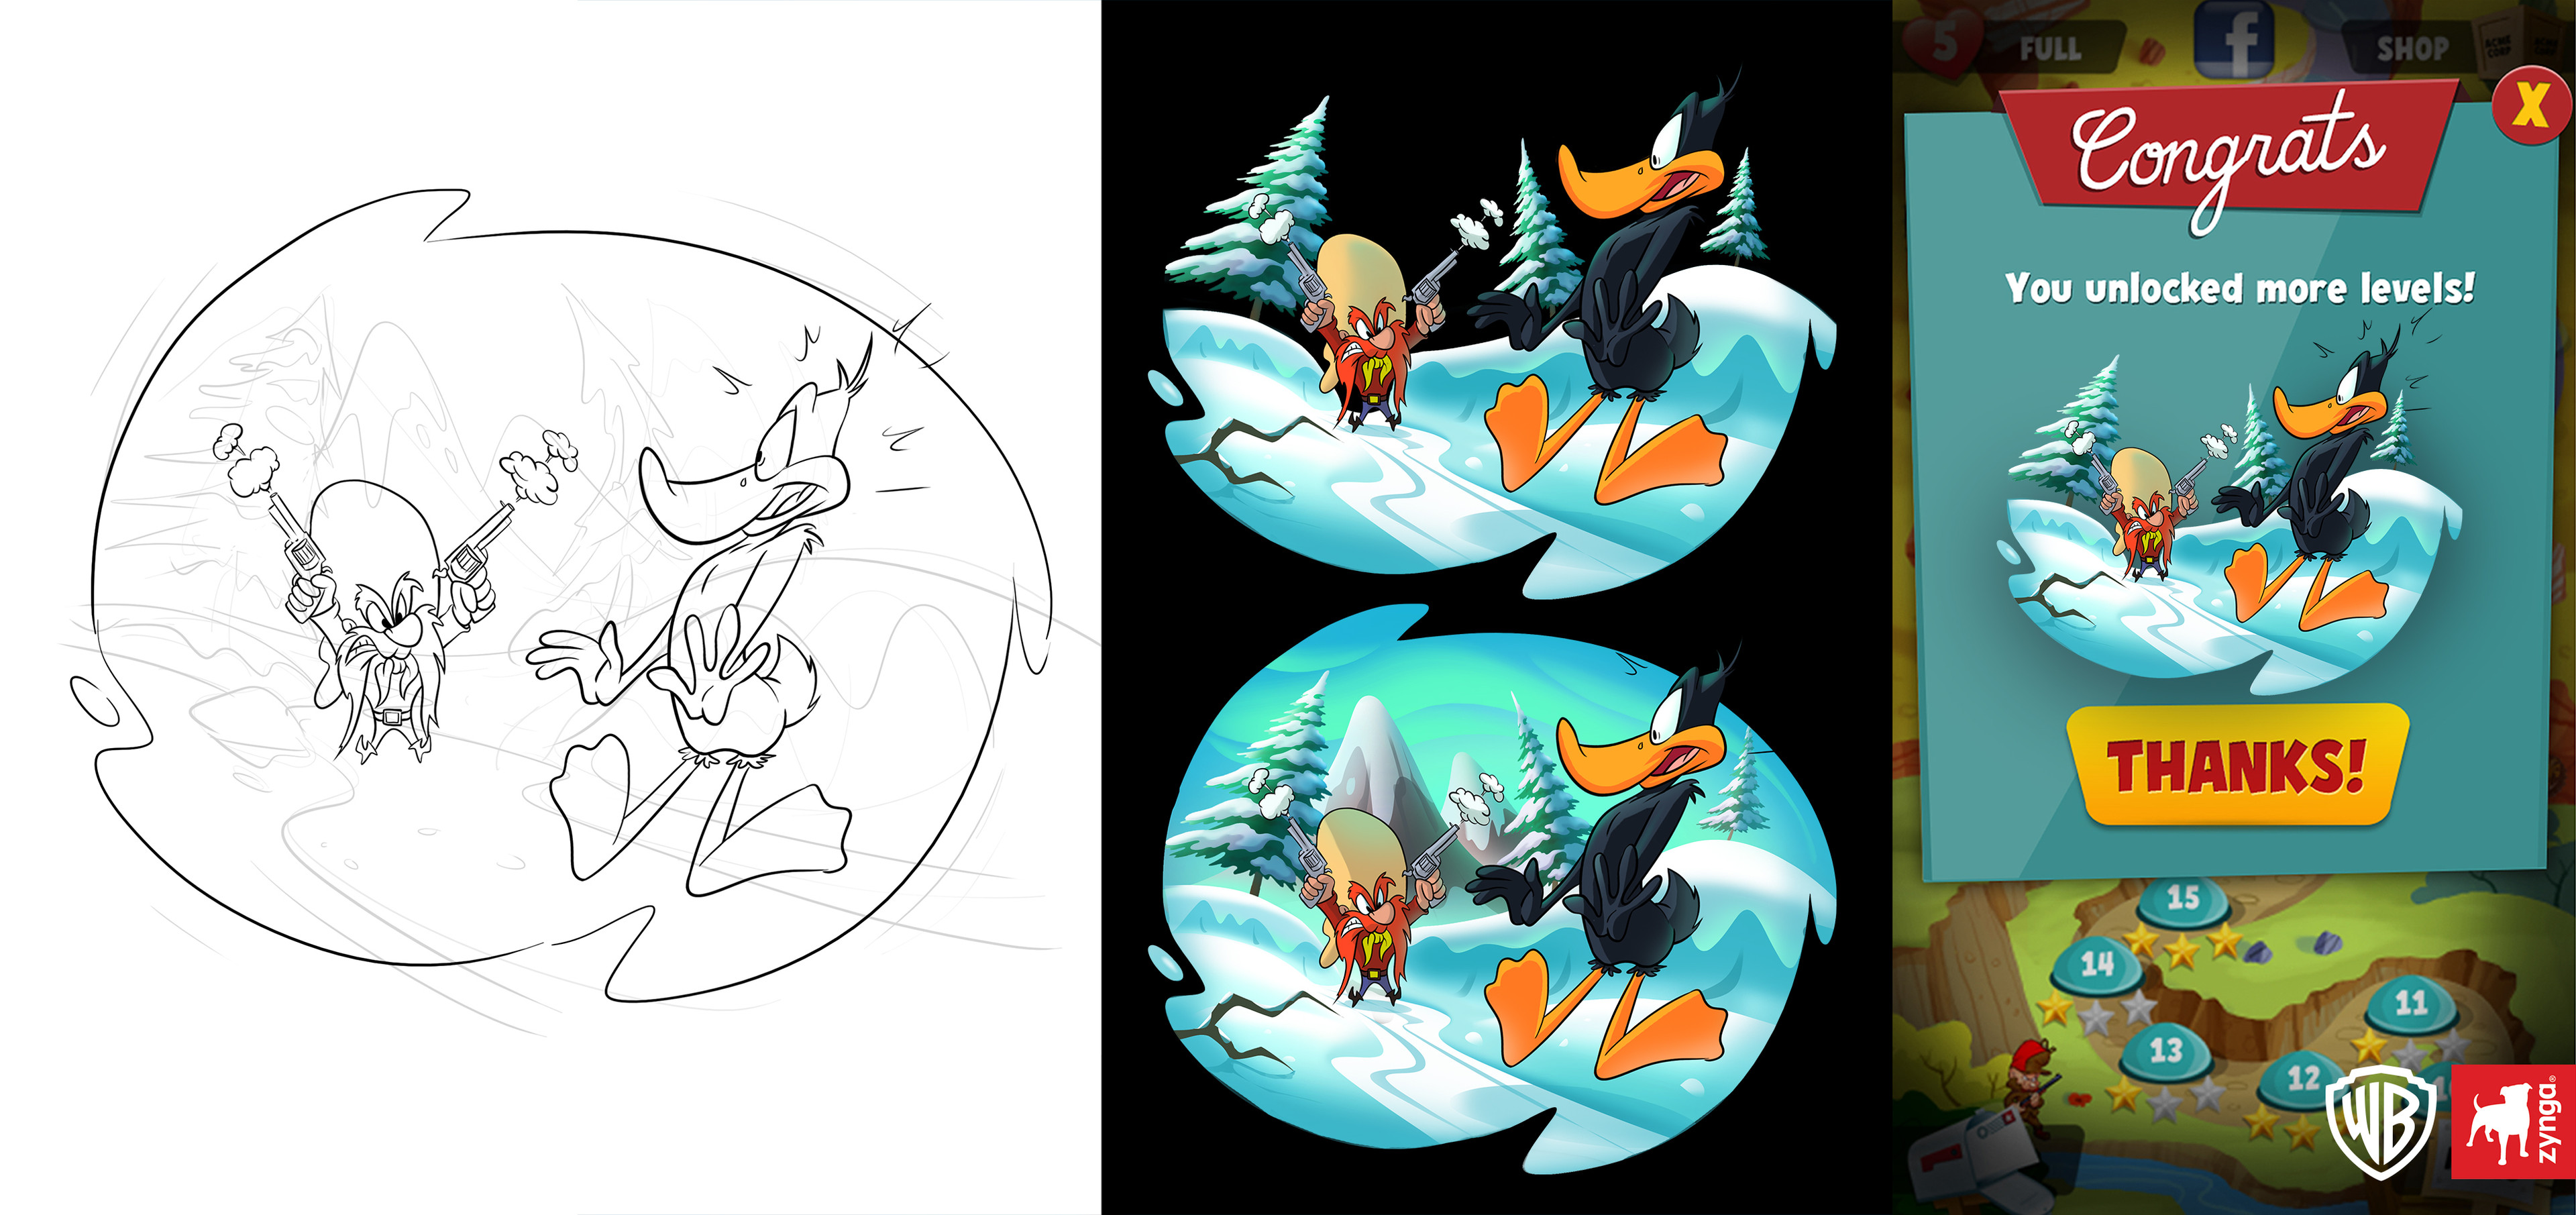 Yosemite sam &amp; Daffy duck (level unlock screen process).
©WB &amp; Zynga.